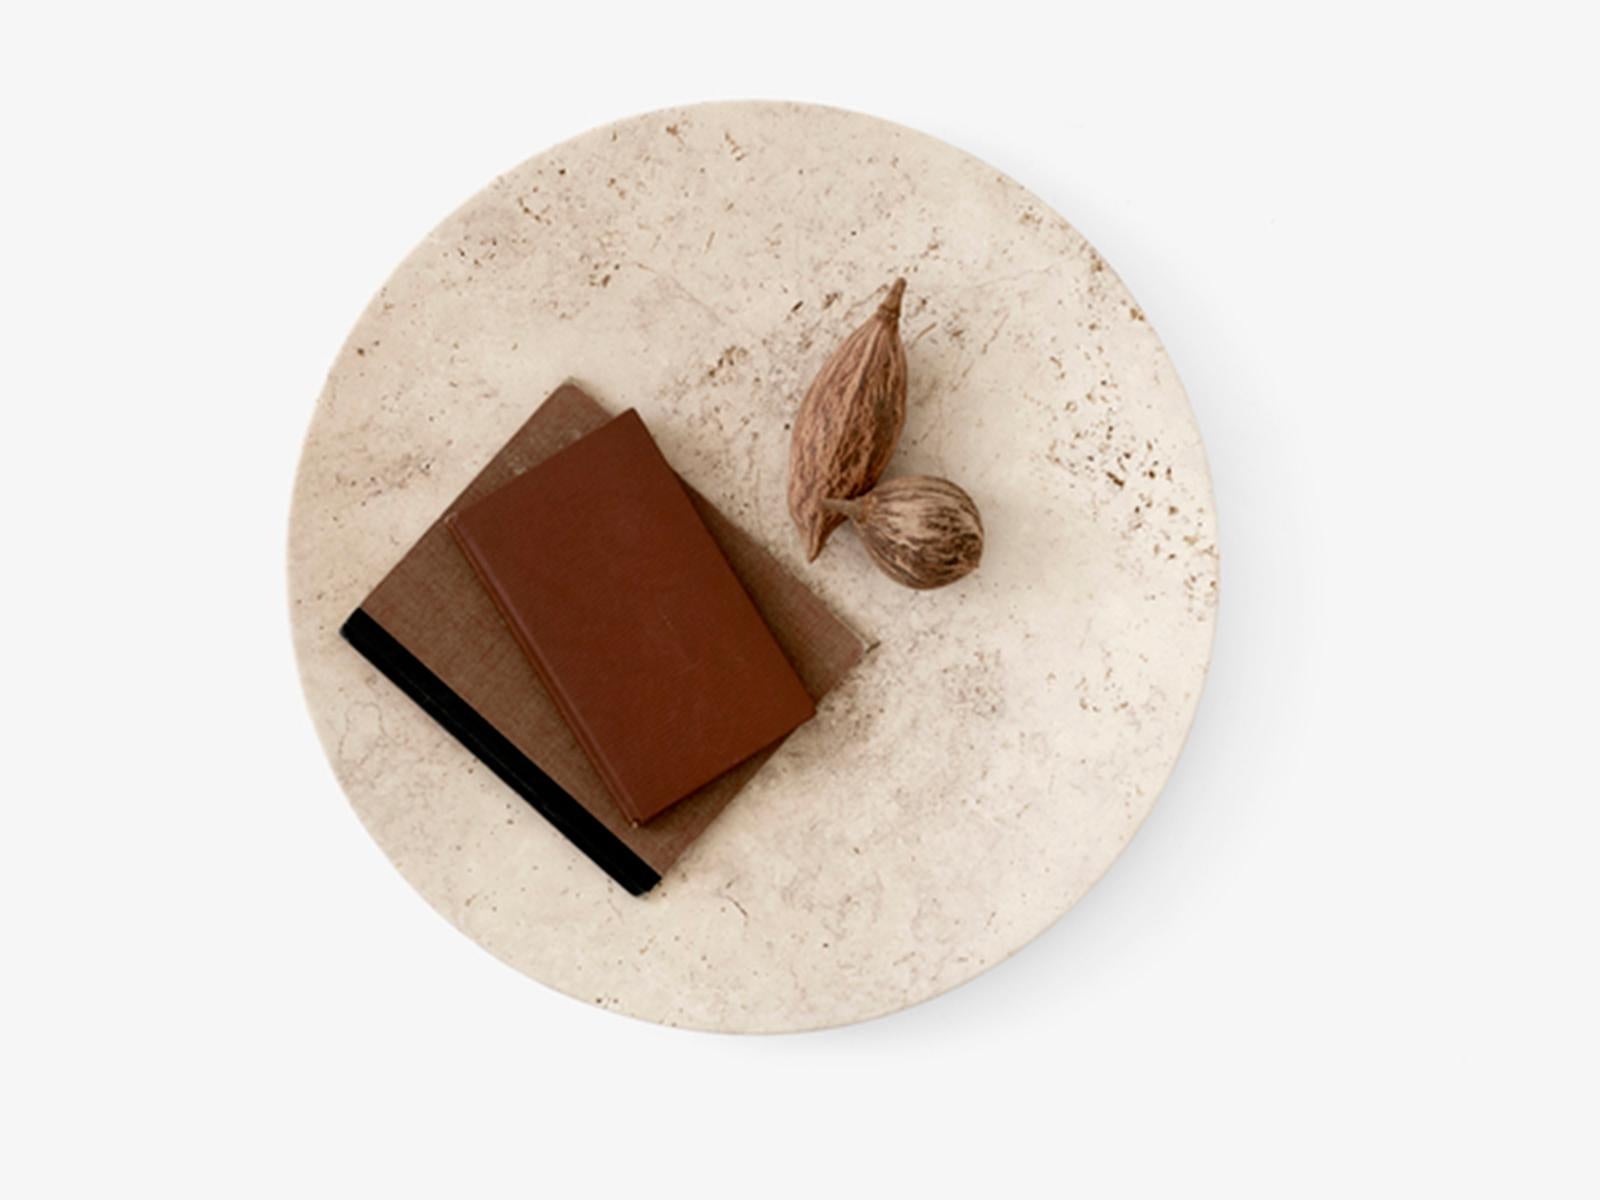 Dieser von Space Copenhagen entworfene, handpolierte Teller ist Teil der Collect-Serie, einer kuratierten Reihe wunderschön gefertigter Einrichtungsgegenstände und Wohnobjekte. 
Dieser Teller aus beigem Travertingestein wurde sorgfältig von Hand